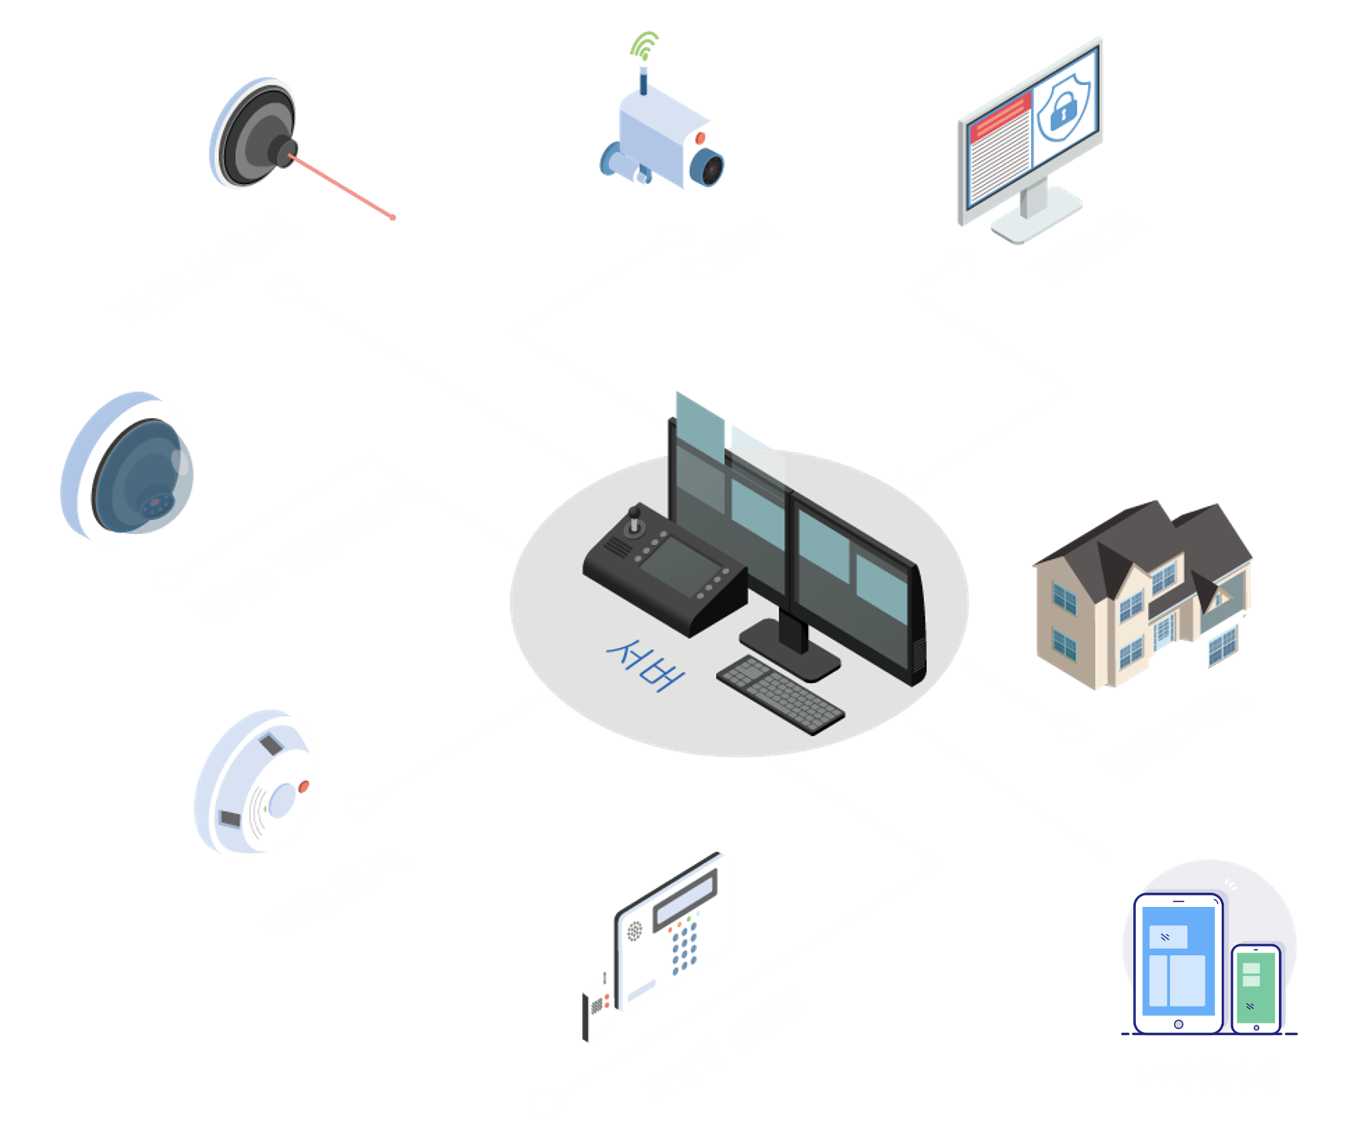 재난방재시스템은 CCTV, 적외선센서,(IR3)불꽃센서, 복합센서, 지능형 분전반아크감지기에 감지된 정보를 서버에 보내며 보내진 서버가 관리자에 상호작용을 하며 서버에서 유관기관으로 정보가 보내지는 효율적인 시스템입니다.